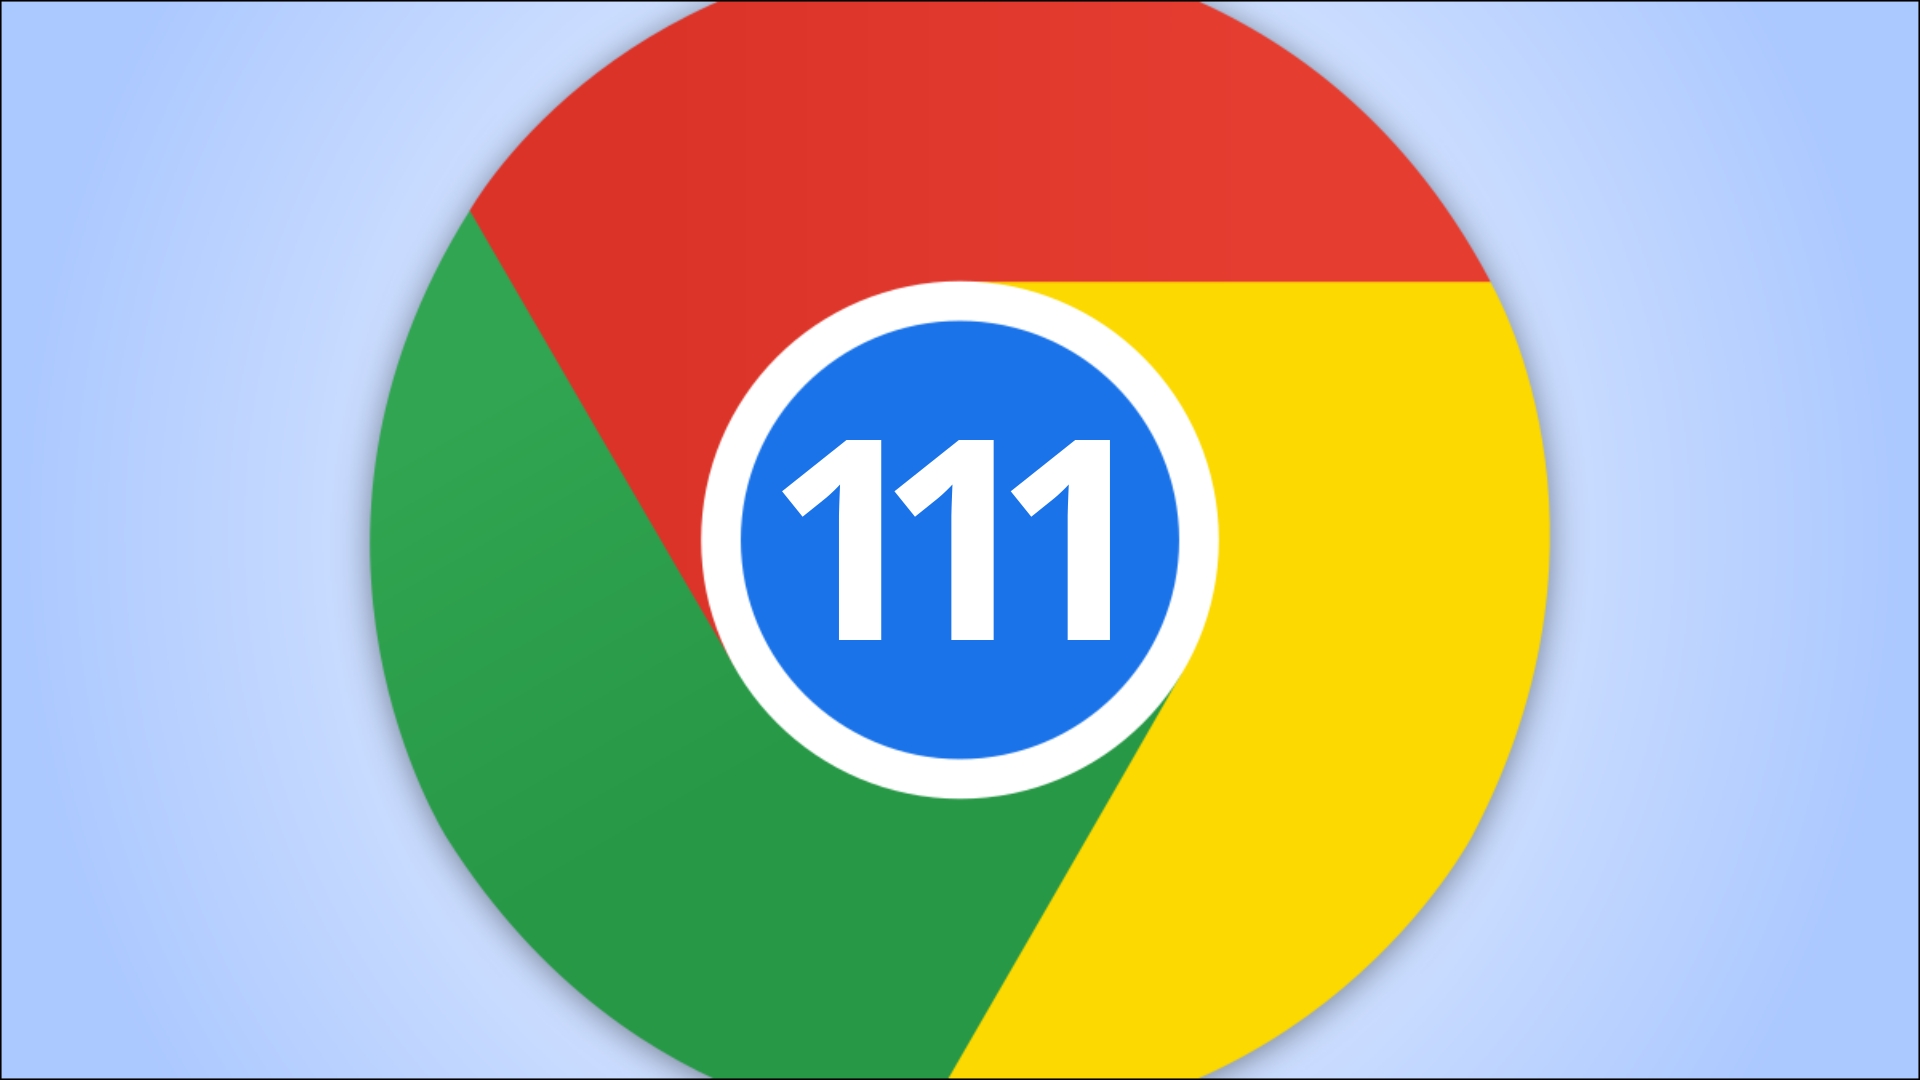 Logotipo do Chrome 111